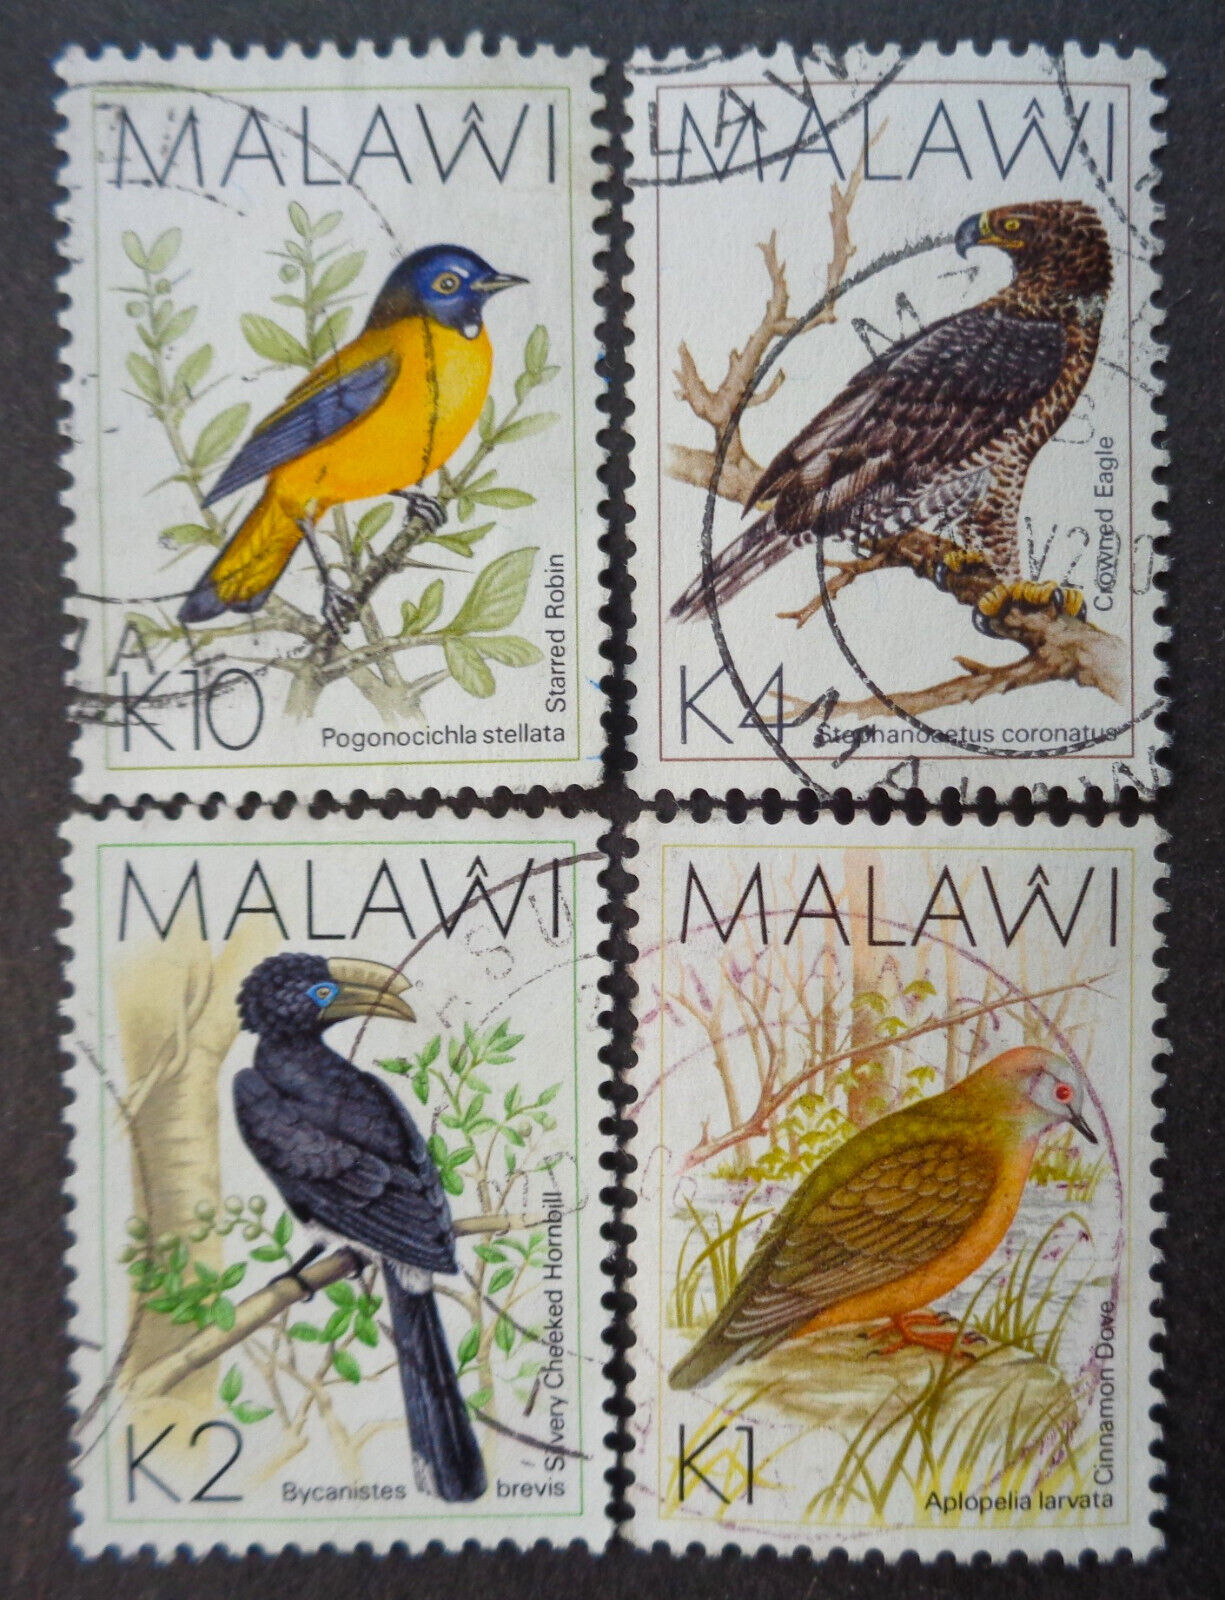 Malawi	#530...533a Used 1988-1994 High-denomination Birds. $11.85 Scv